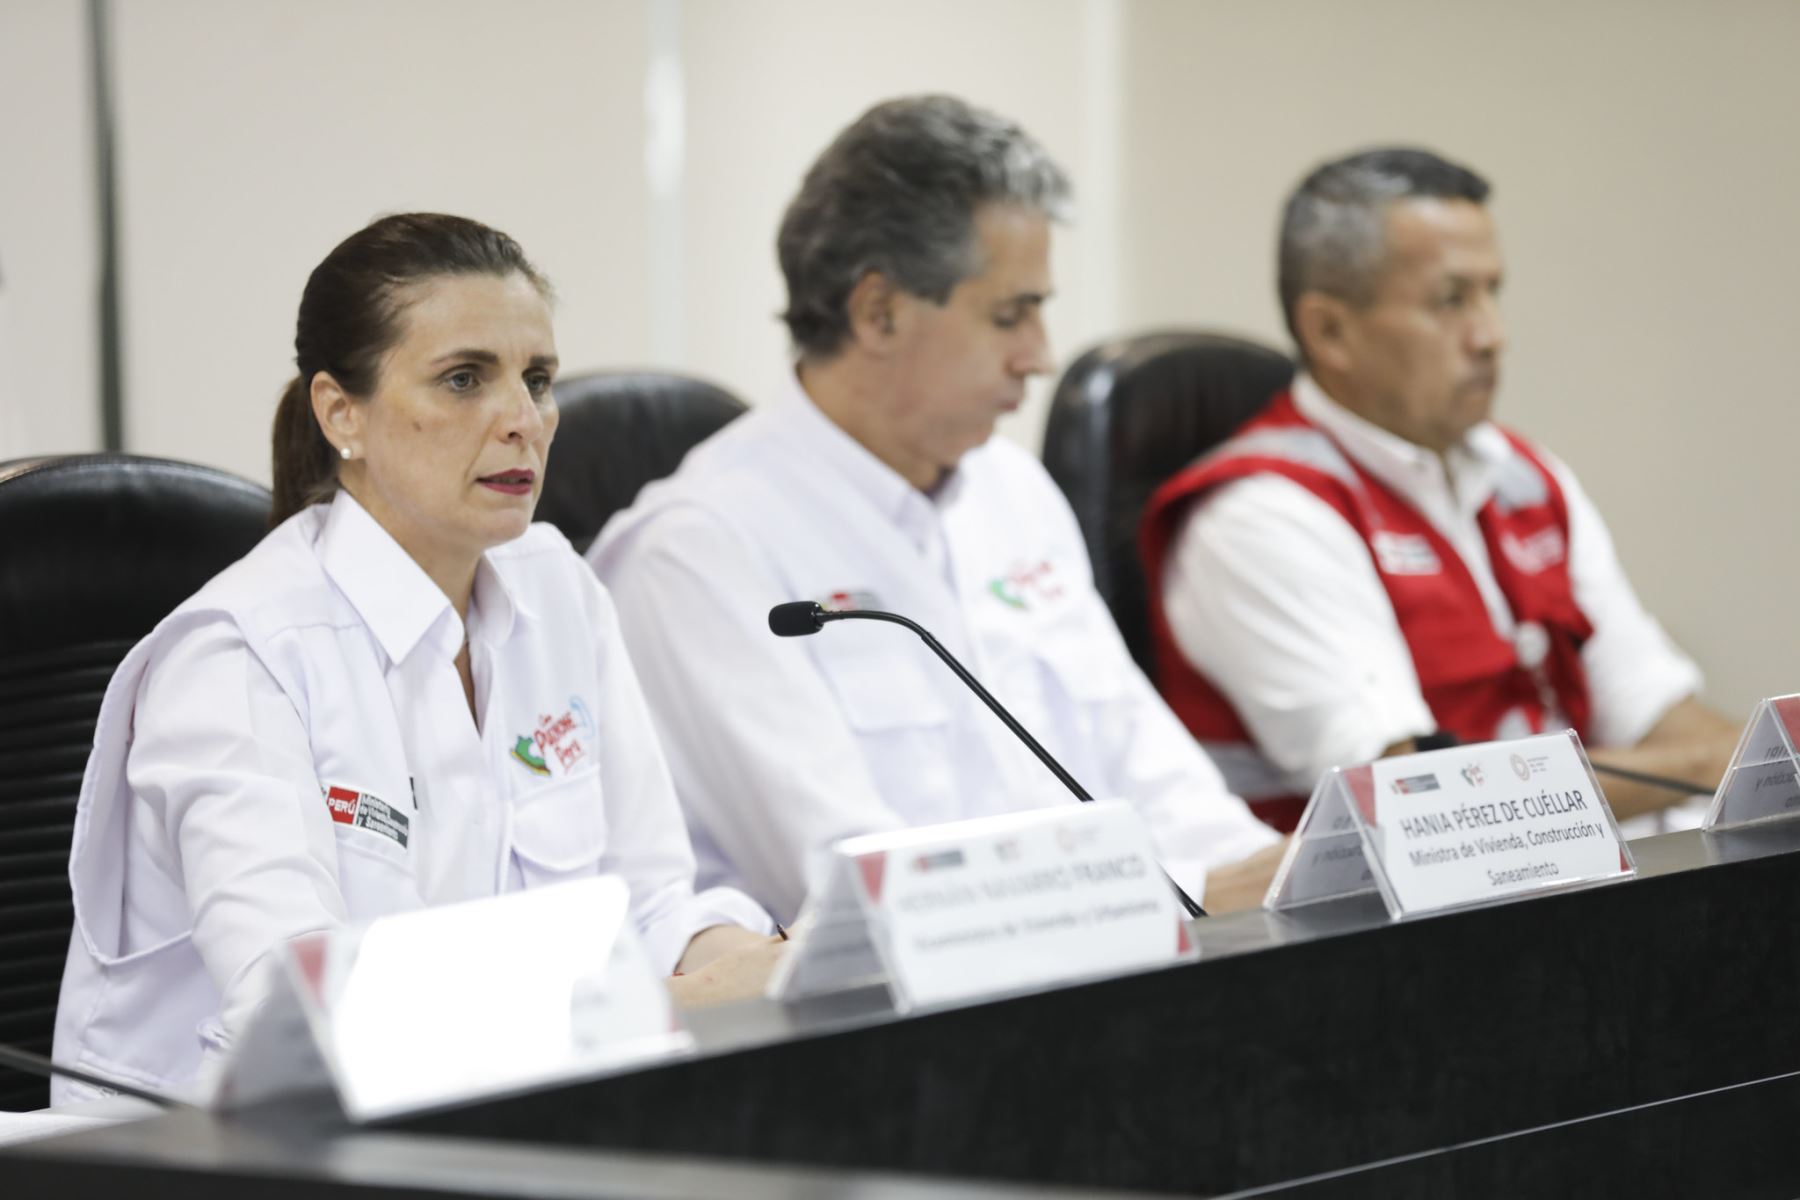 Ministra de Vivienda, Hania Pérez De Cuéllar brinda conferencia de prensa sobre acciones en materia de lucha contra la corrupción.
Foto: Ministerio de Vivienda